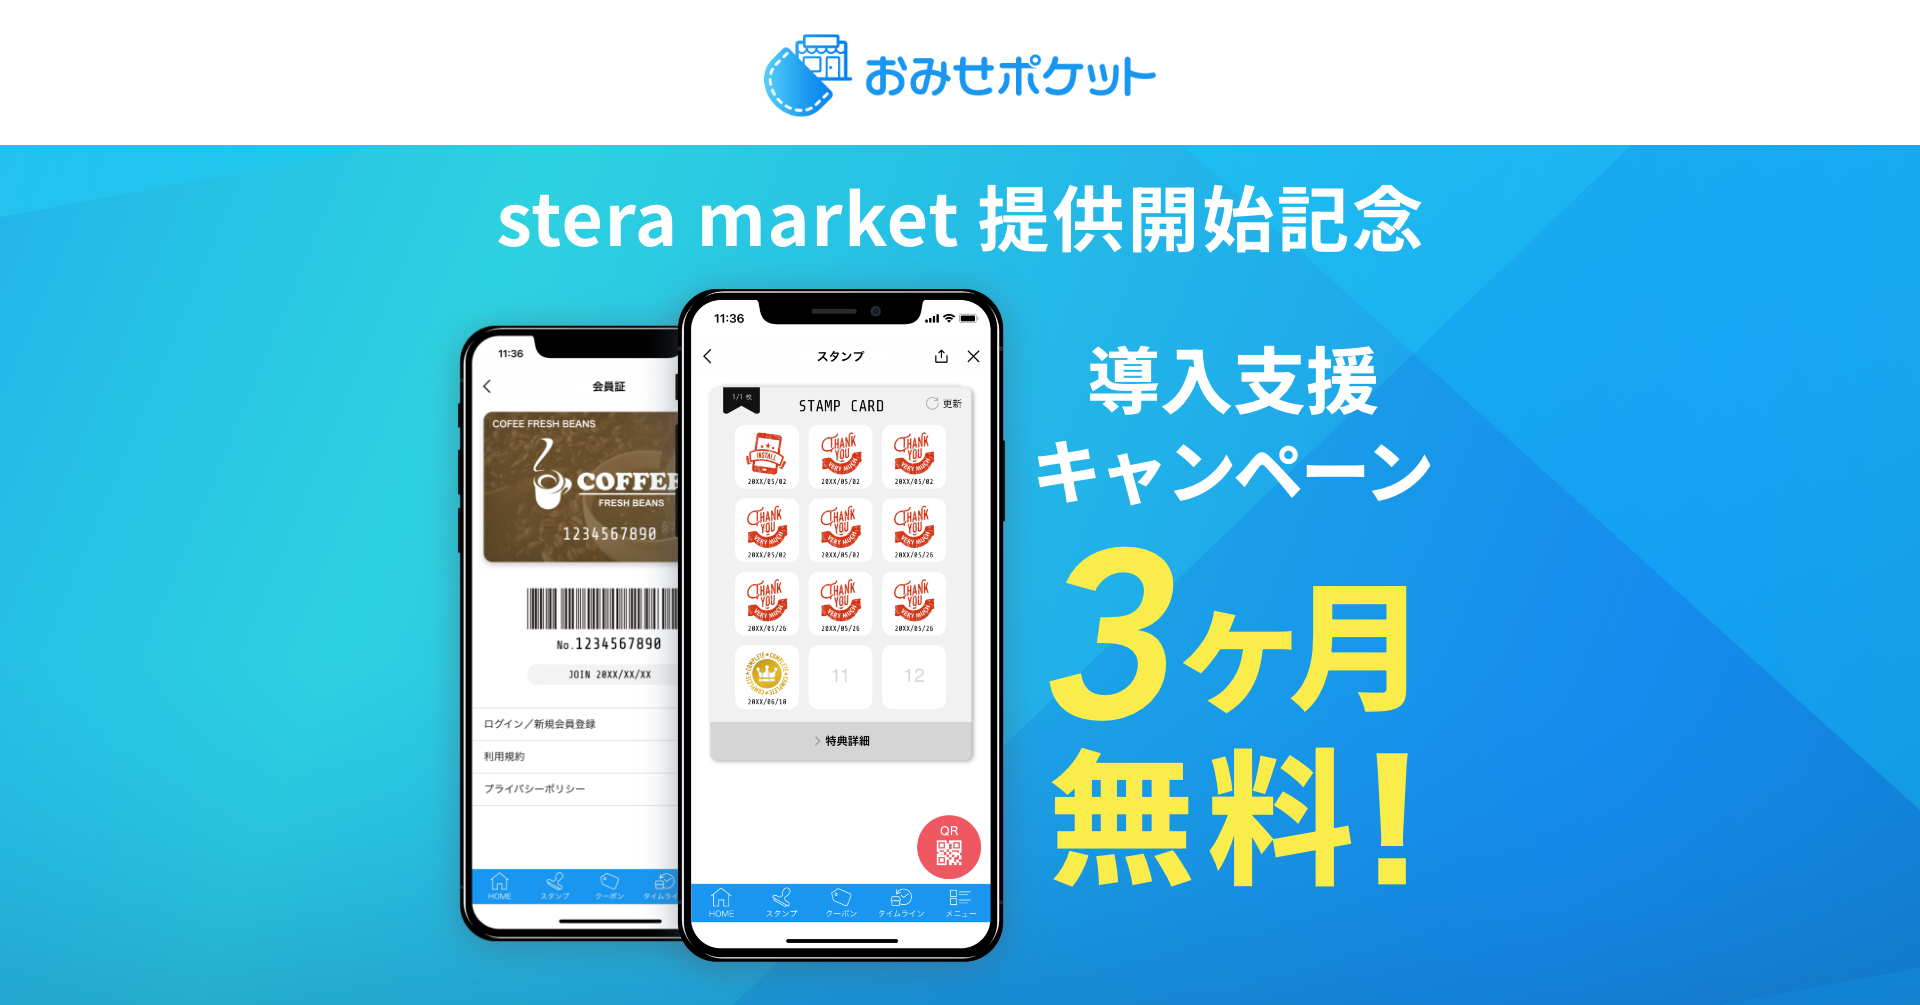 販促・集客アプリ「おみせポケット」、アプリマーケットプレイス「stera market」で提供を開始